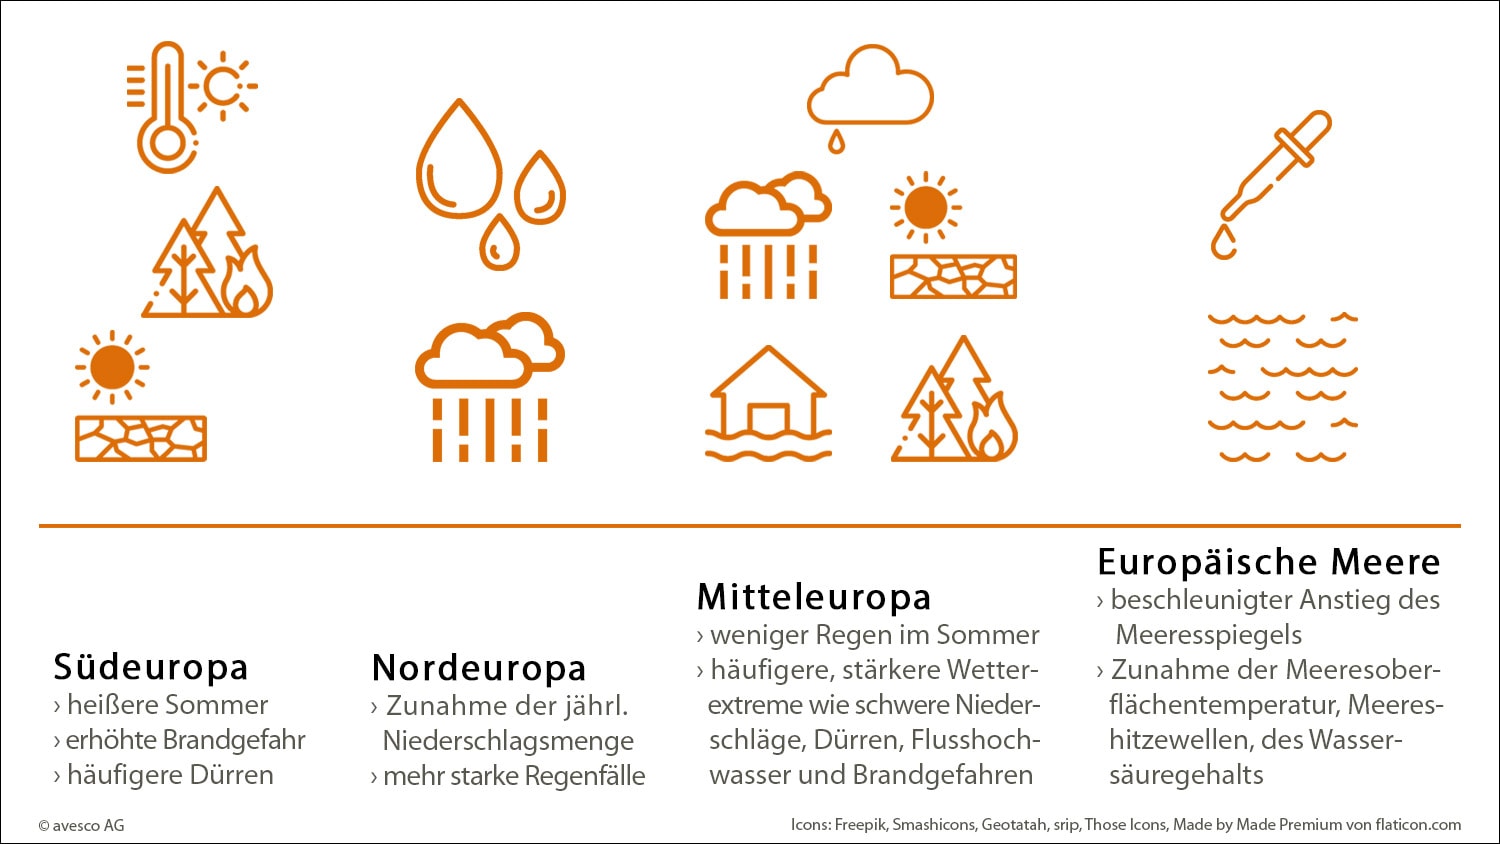 Eine Grafik, die die Klimagefahren für die europäischen Regionen zeigt: Südeuropa, Nordeuropa, Mitteleuropa und die europäischen Meere.